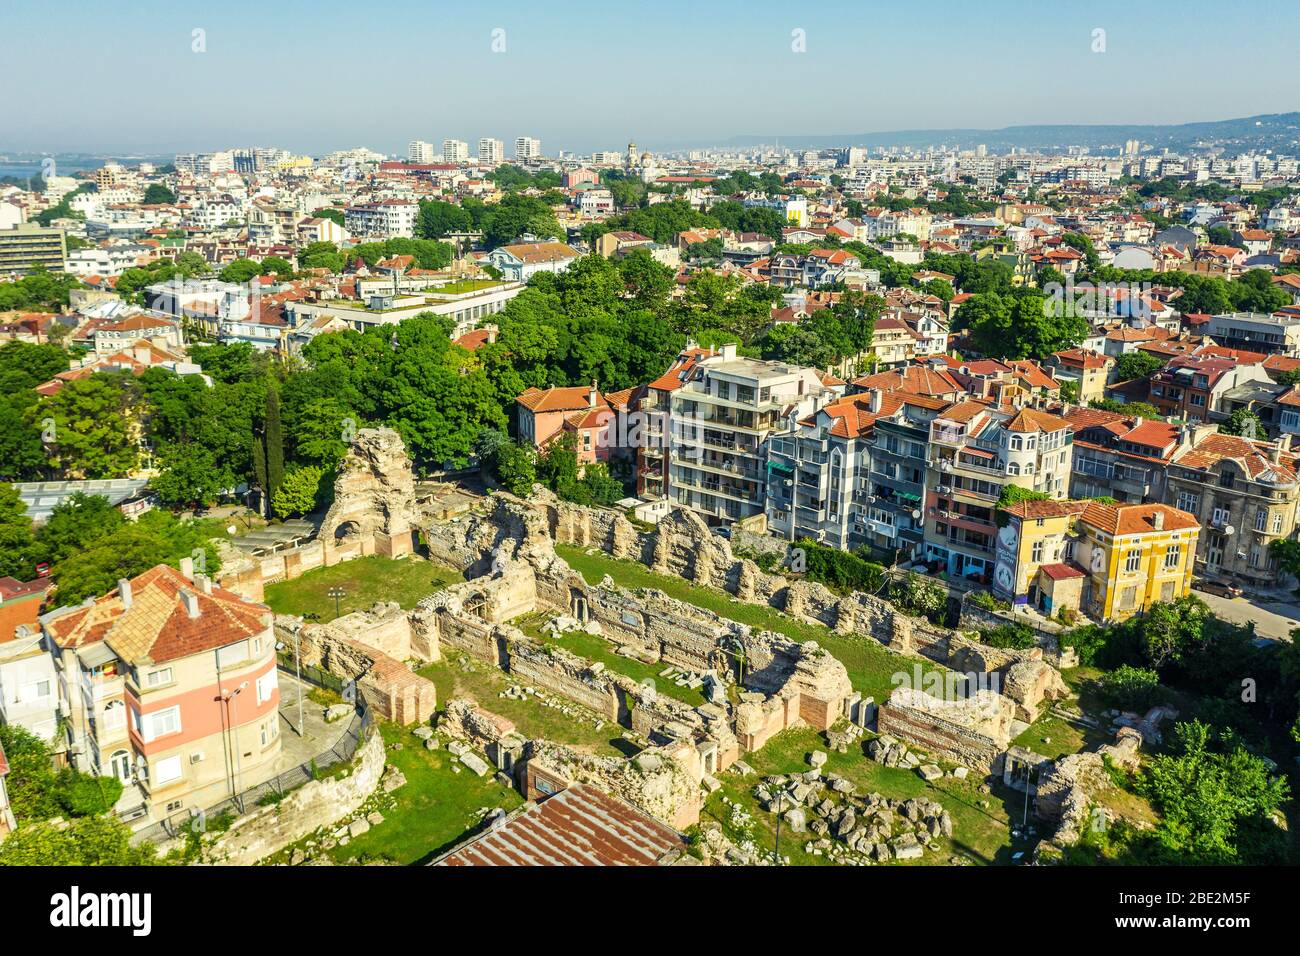 Europe, Bulgarie, Varna, vue aérienne des ruines romaines du bain thermal Banque D'Images